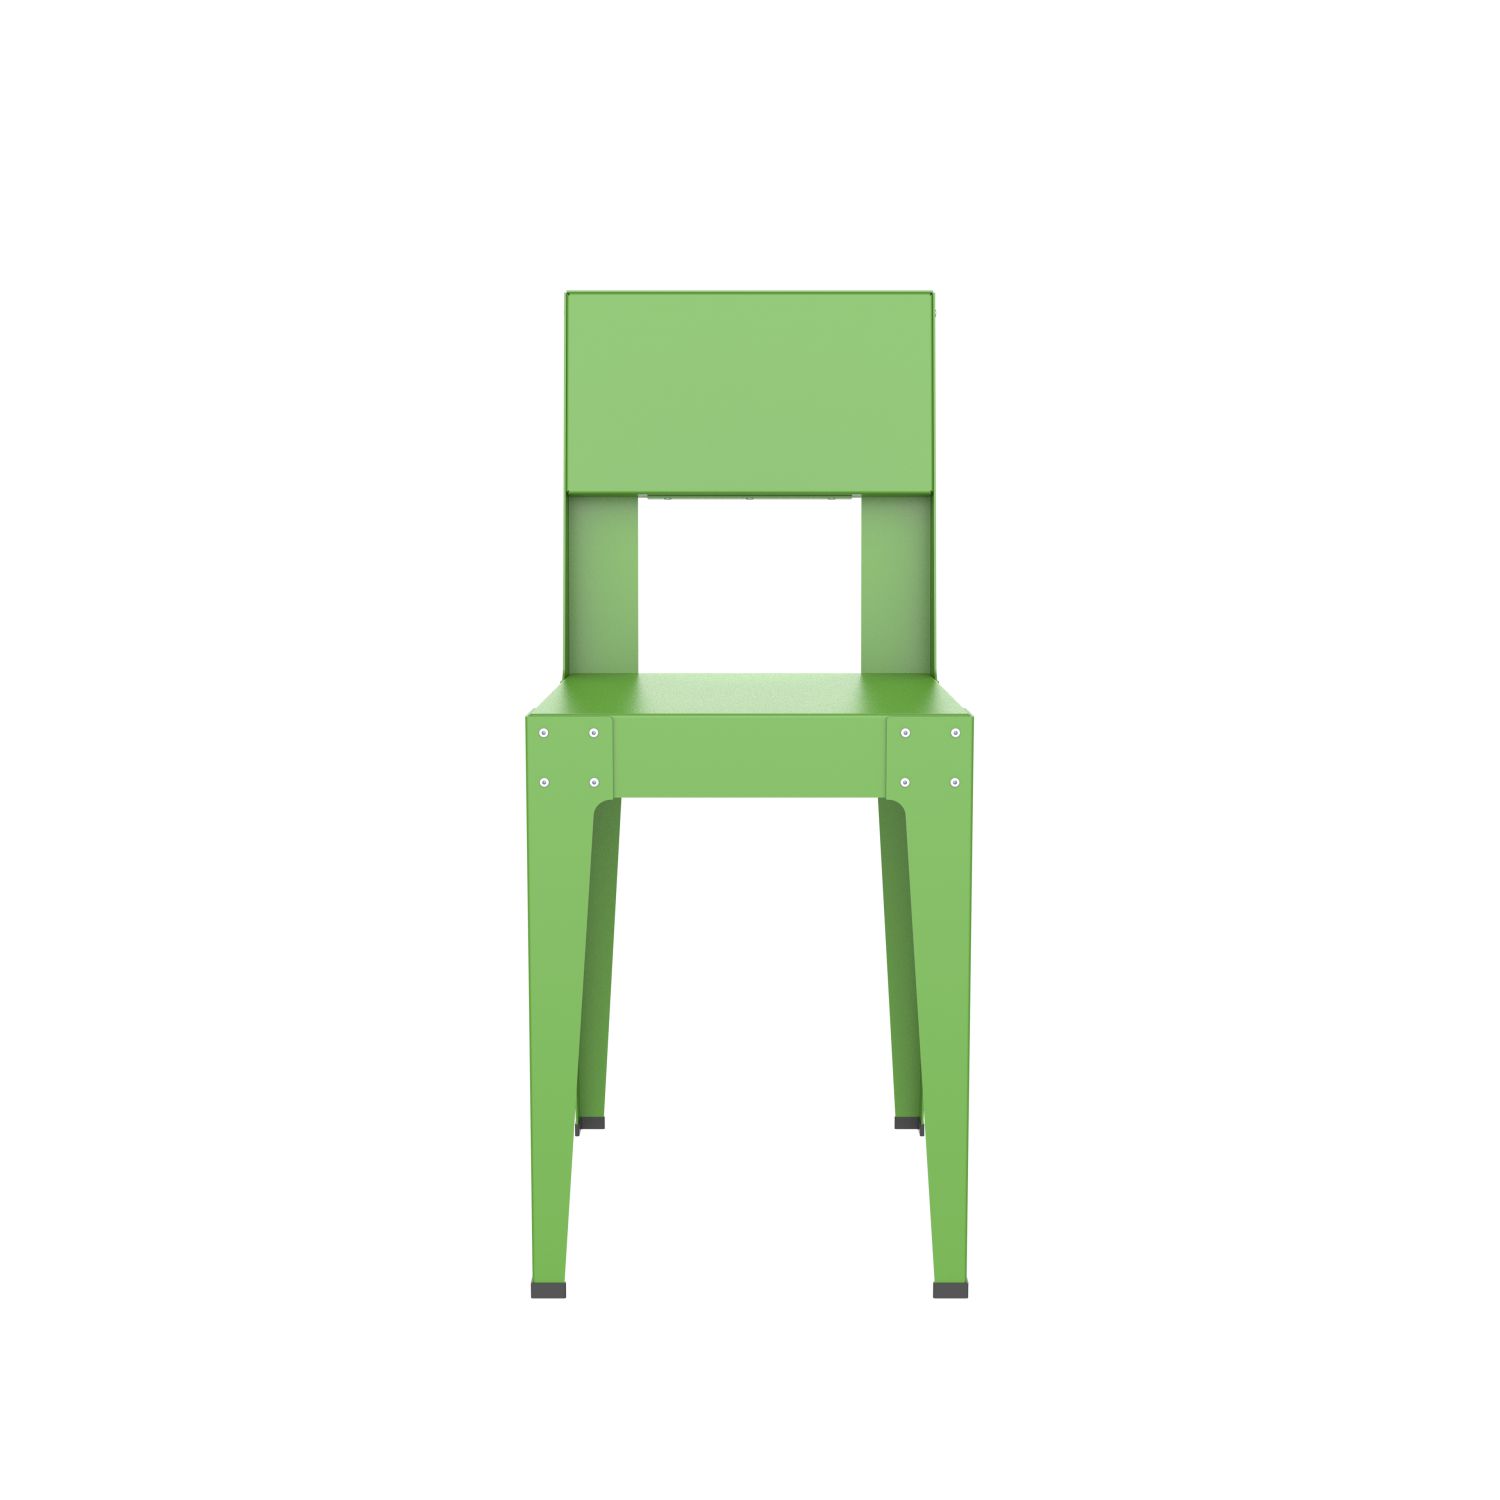 lensvelt piet hein eek aluminium series chair yellow green ral 6018 soft leg ends